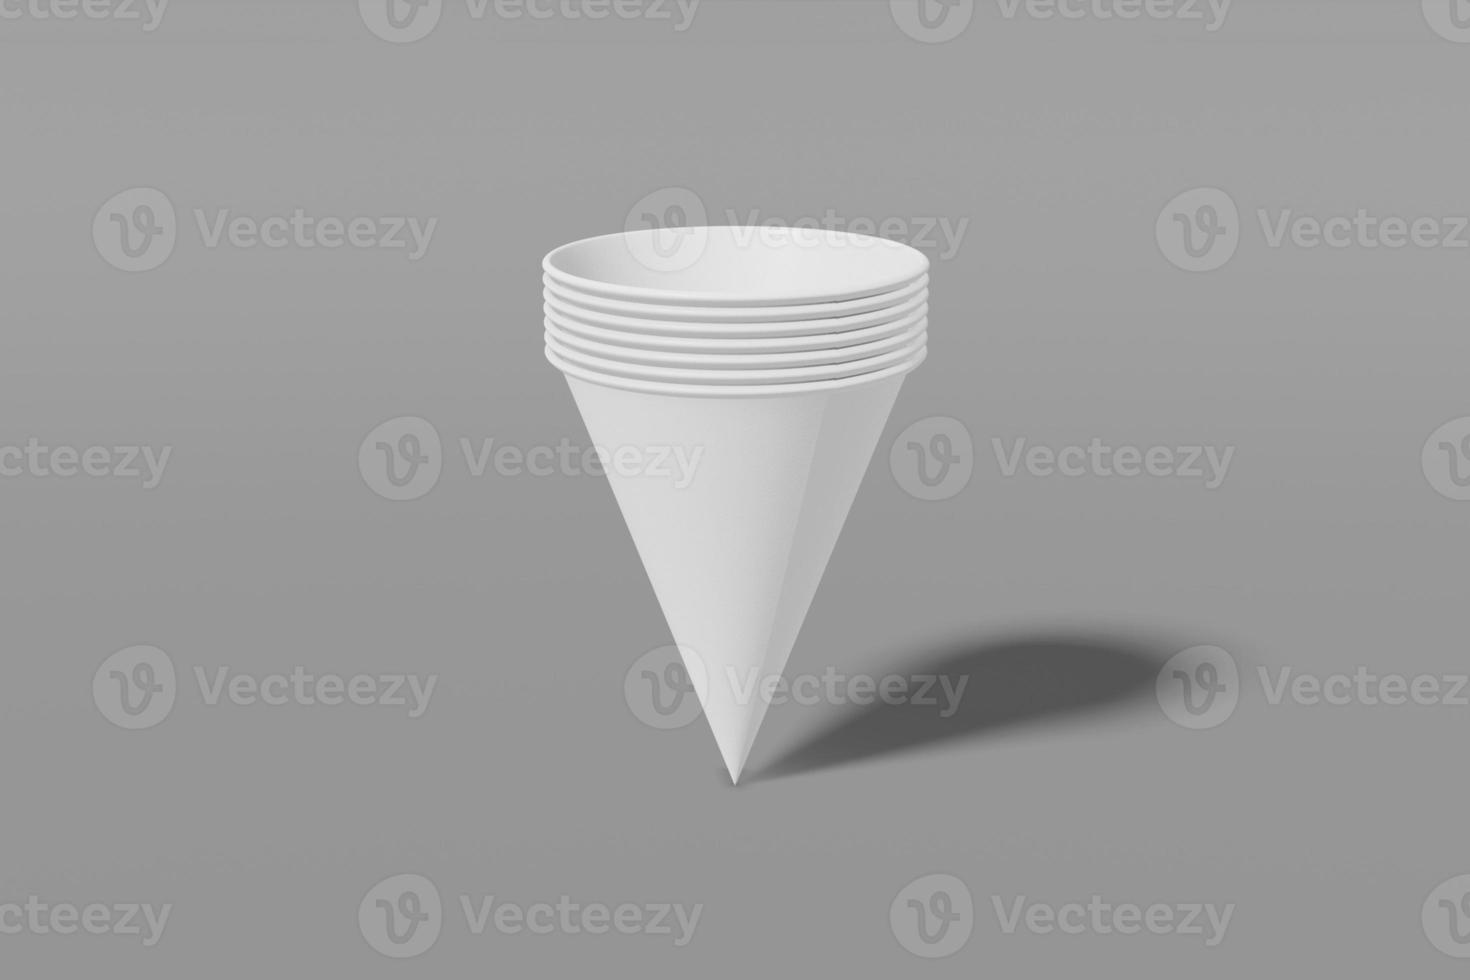 ensemble de gobelets en papier blanc en forme de cône imbriqués les uns dans les autres sur fond gris. rendu 3d photo